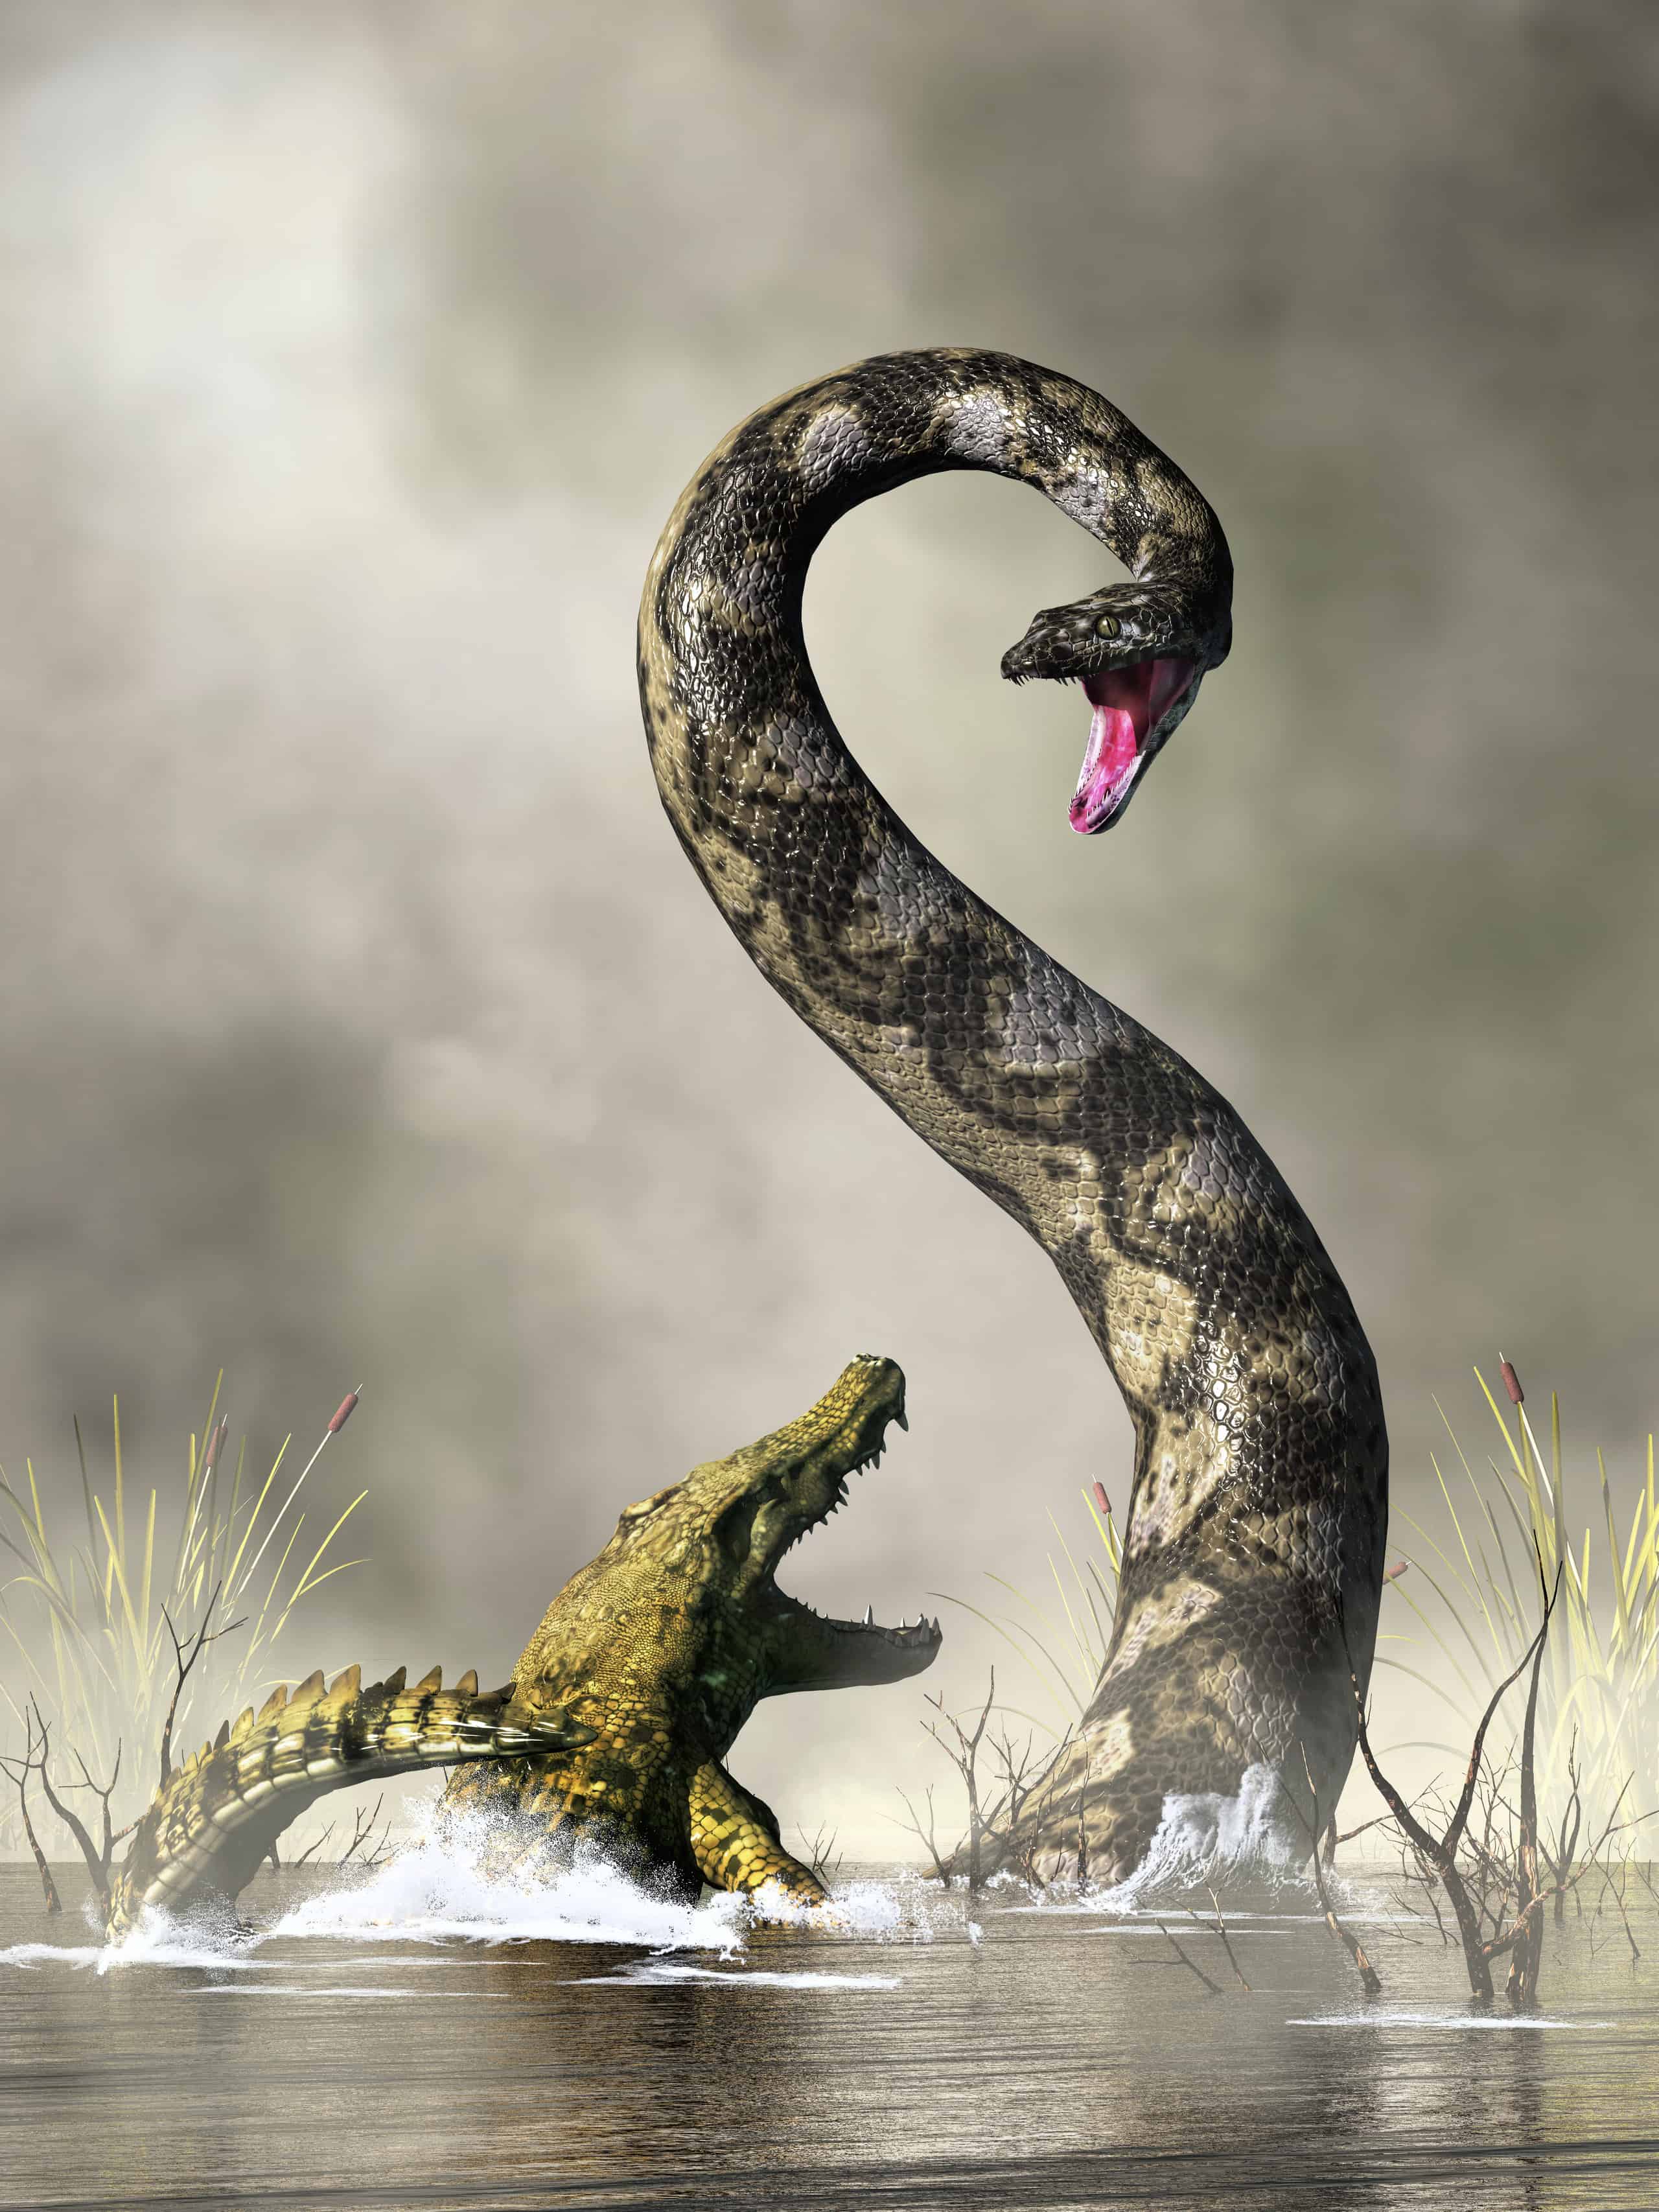 titanoboa monster snake 2022